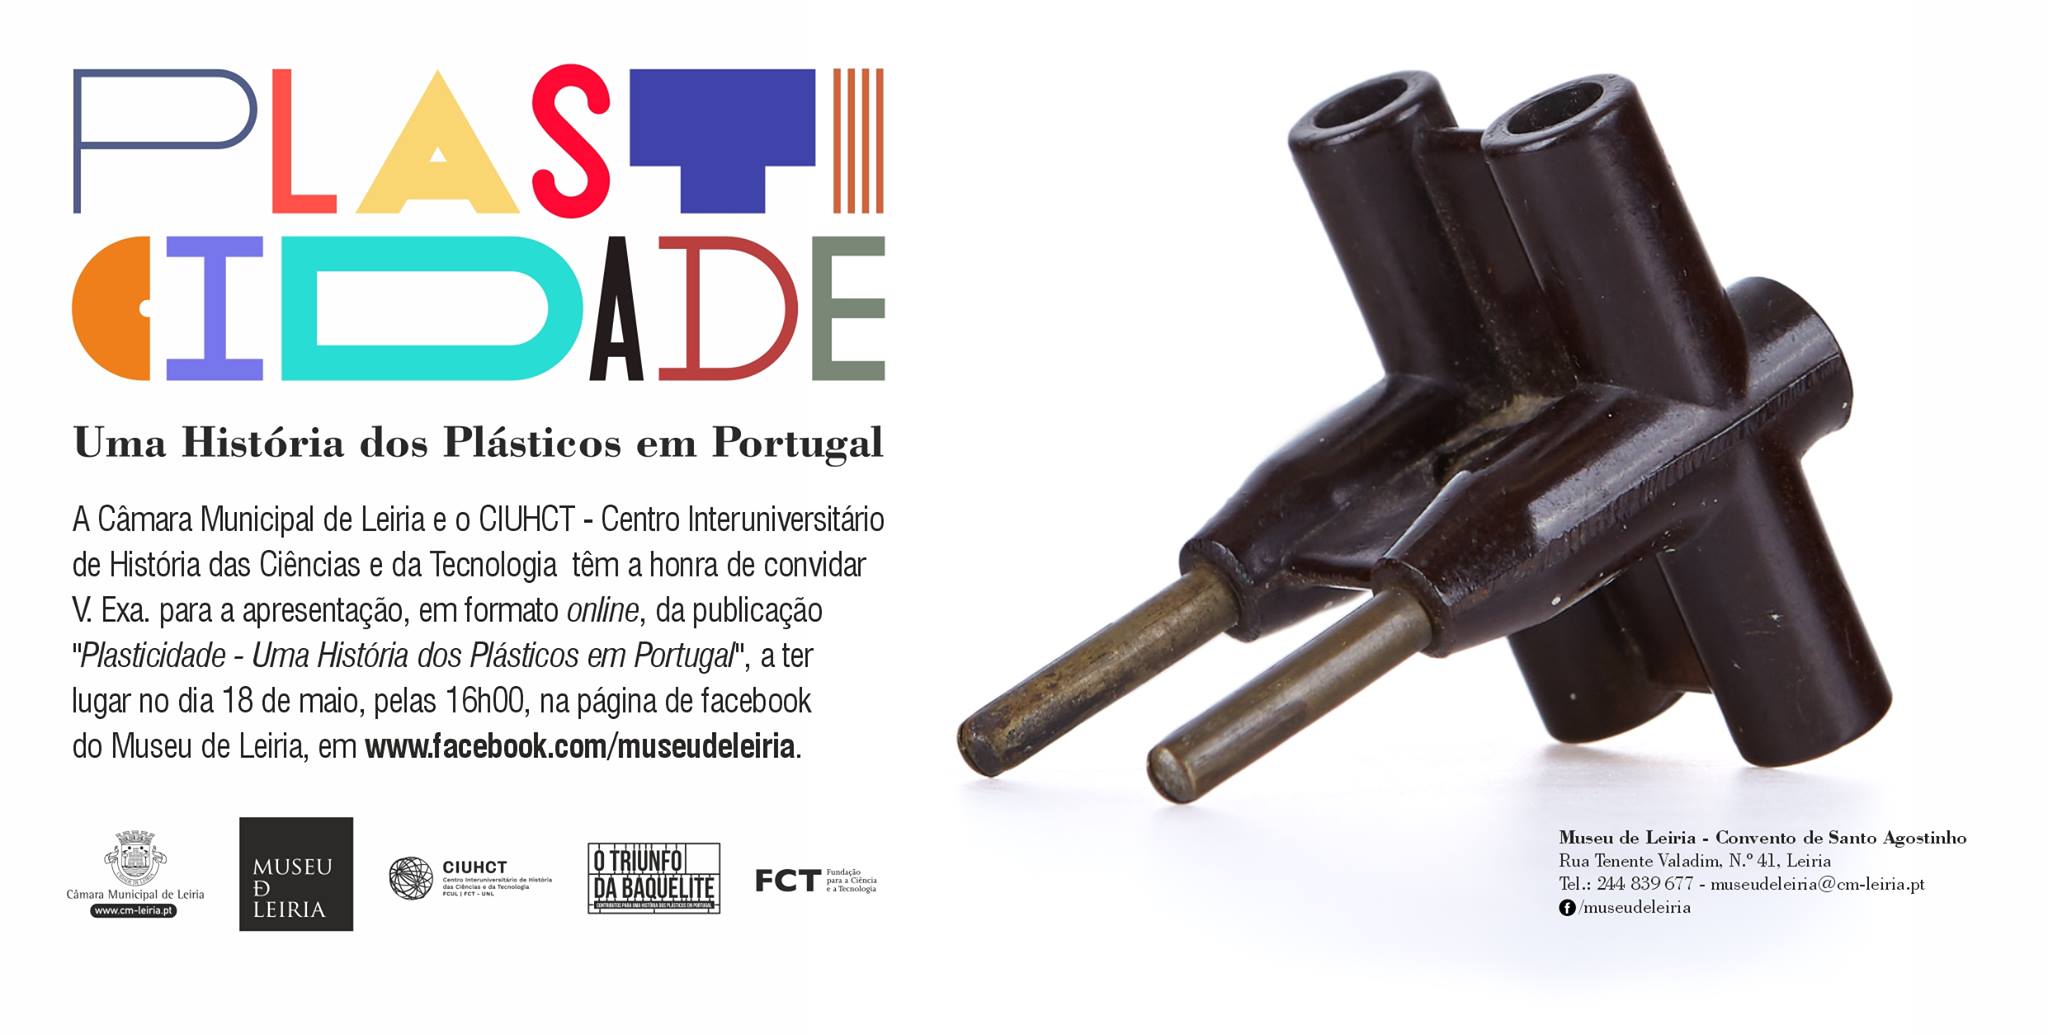 Apresentação online da publicação 'Plasticidade - Uma História dos Plásticos em Portugal'